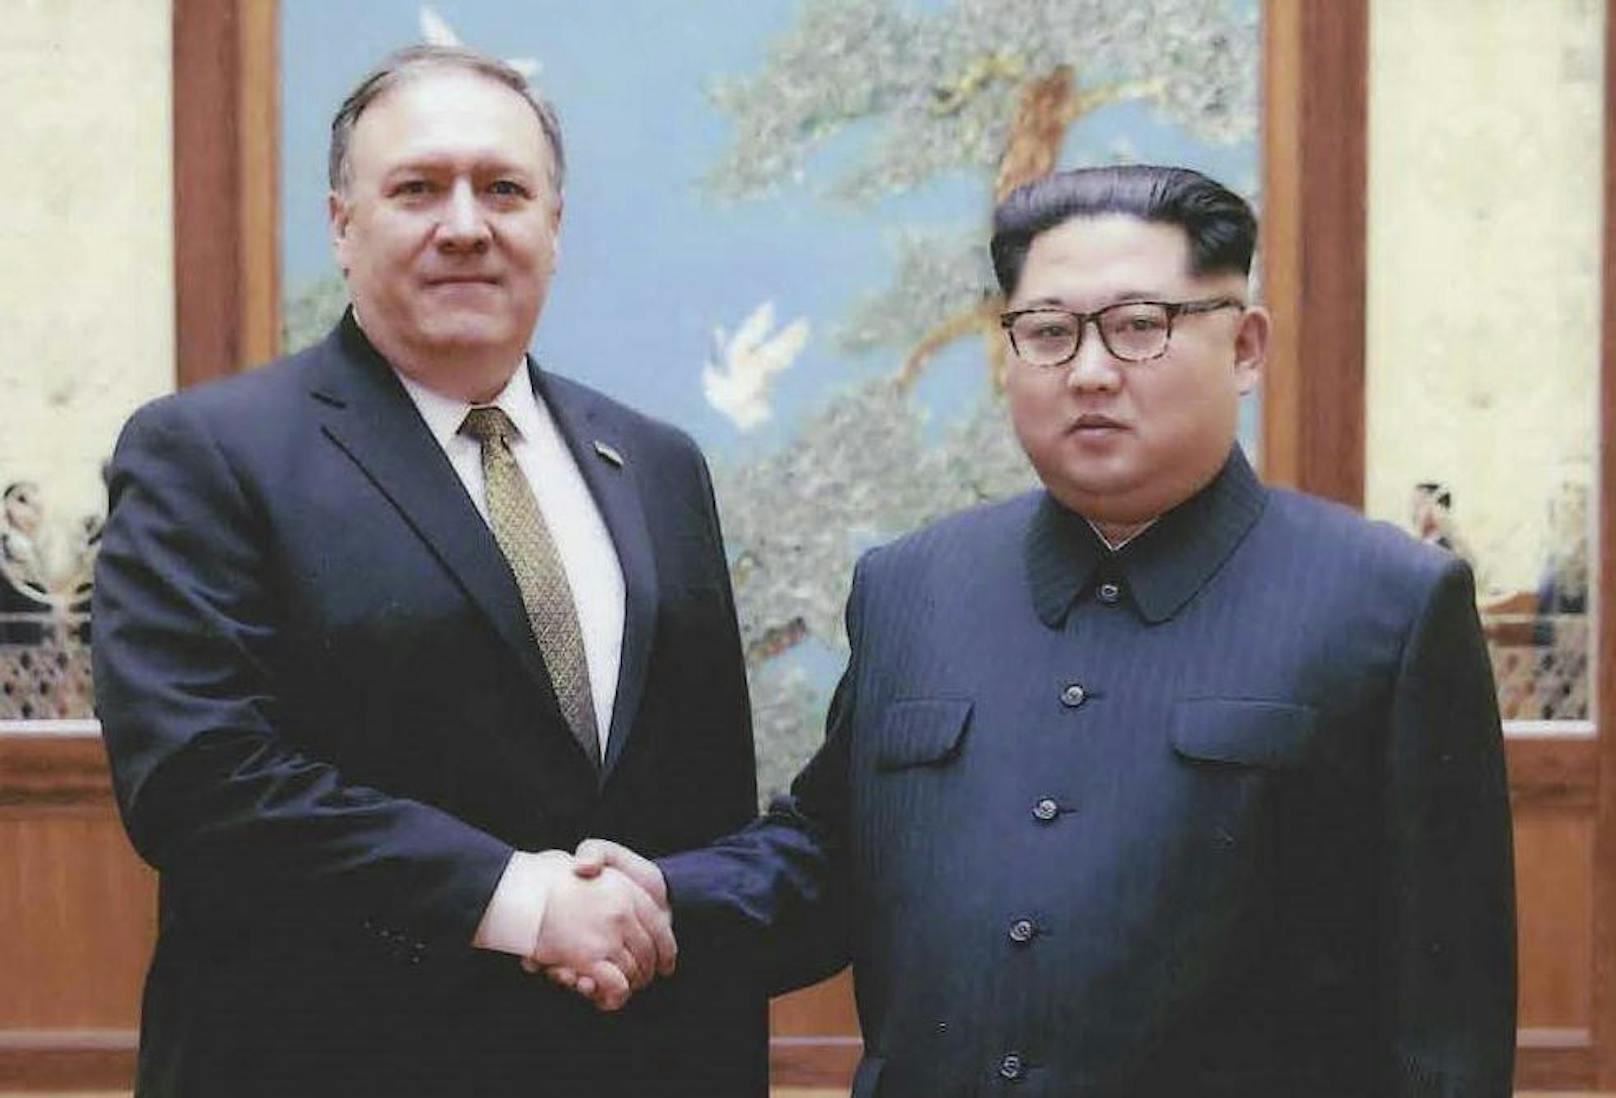 Es ist bereits der zweite Besuch Pompeos in Pjöngjang innerhalb weniger Wochen. Allerdings ist es seine erste Stippvisite als Außenminister der USA. Die Bilder stammen von dem Treffen am 26. April 2018.